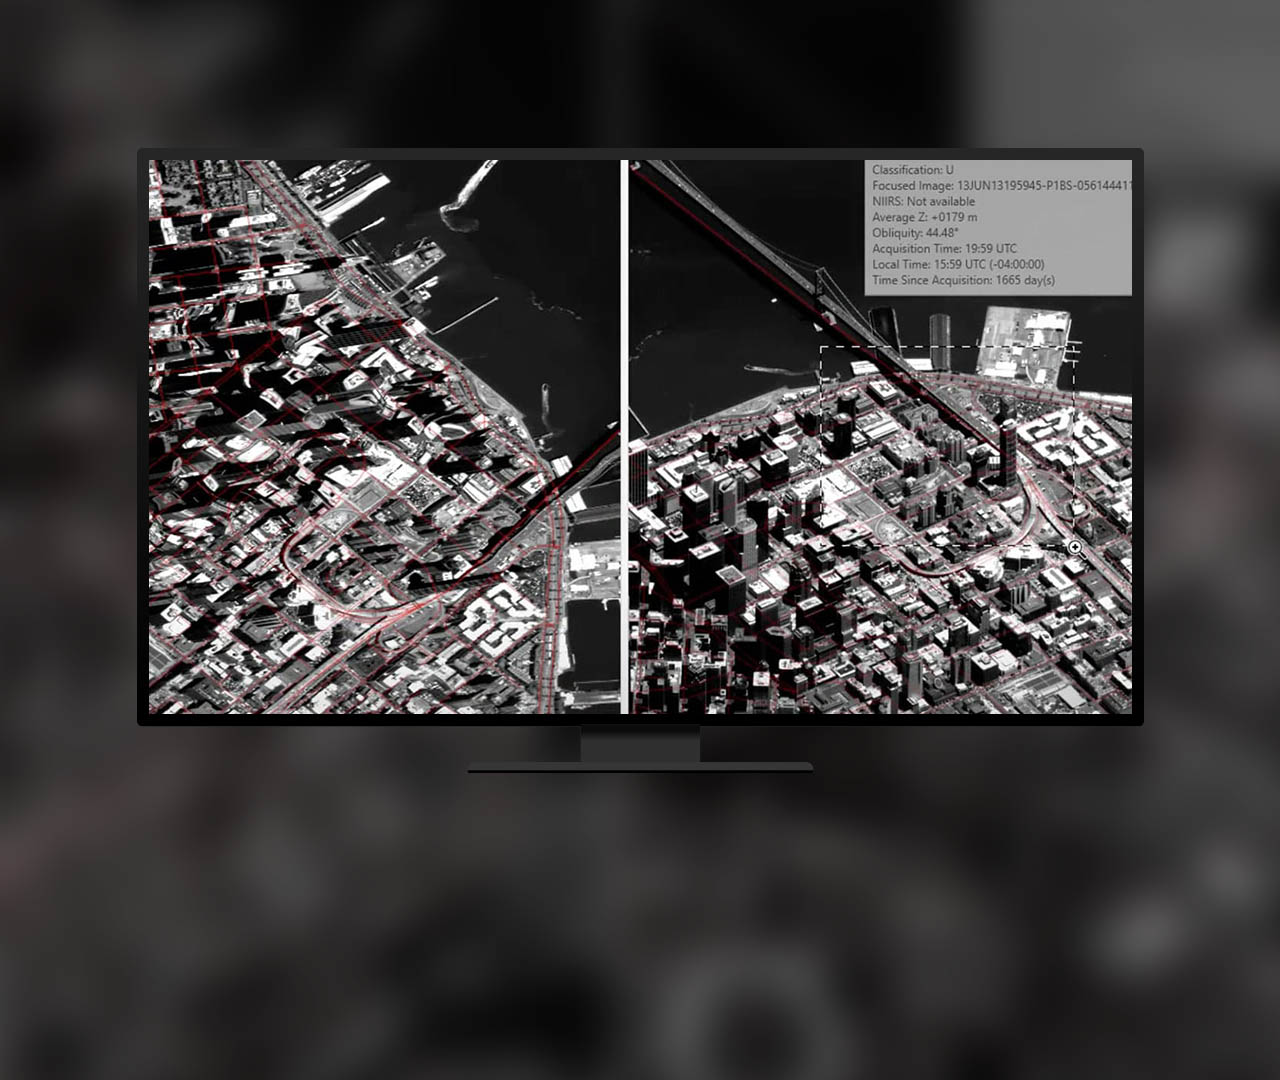 Vista lateral de una imagen de satélite digital de un globo terráqueo oblicuo con datos de entidades